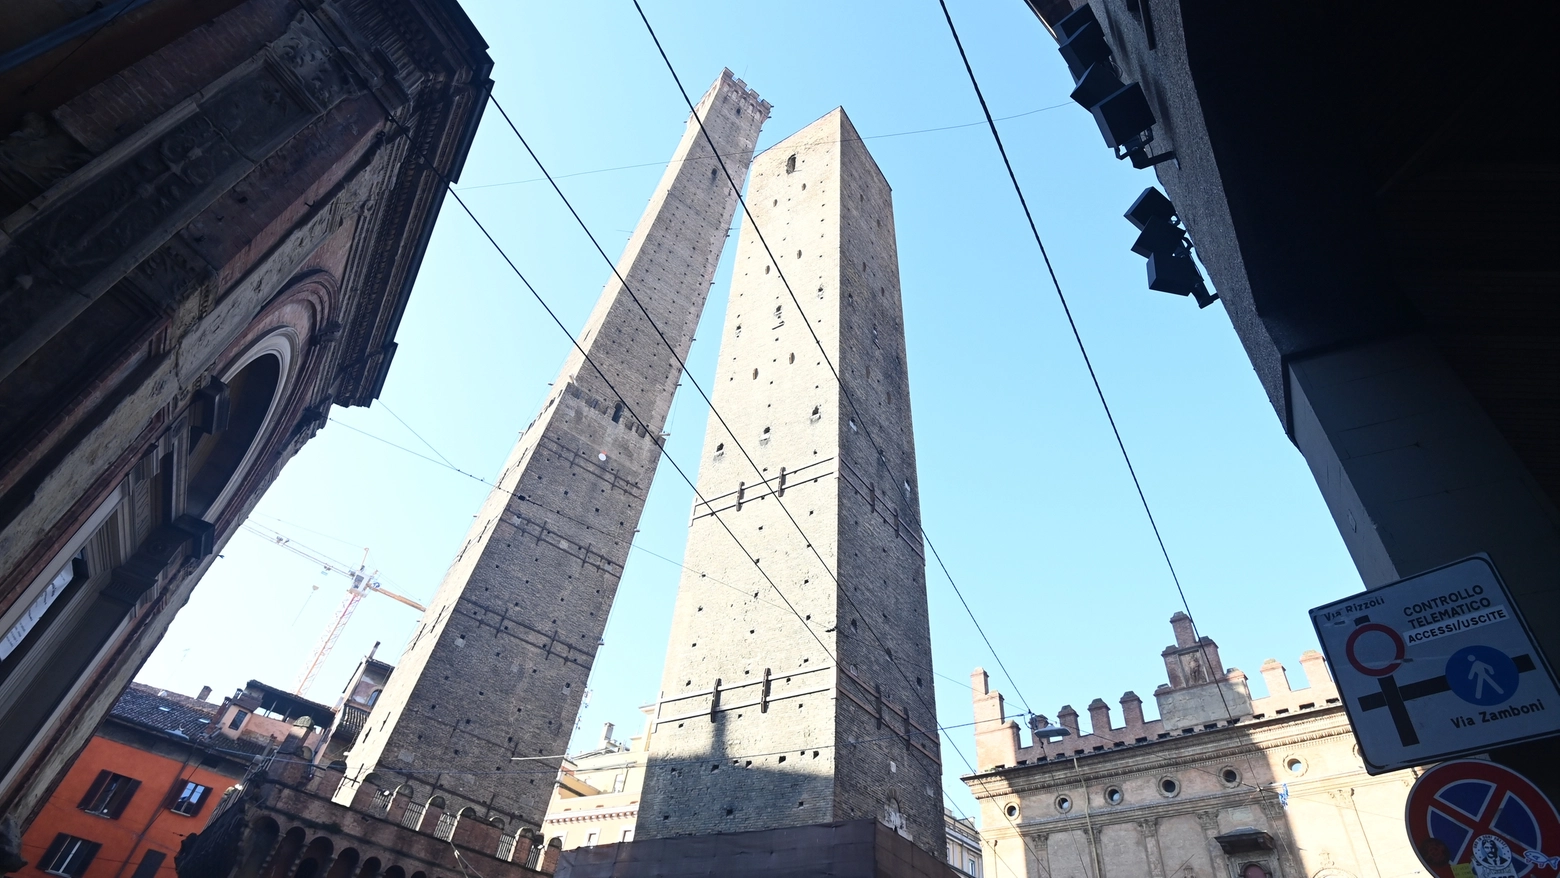 La rassegna corrisponde a una serie di appuntamenti e iniziative per tutte le età promosse dal comune di Bologna, per valorizzare il patrimonio culturale e il monumento simbolo della città